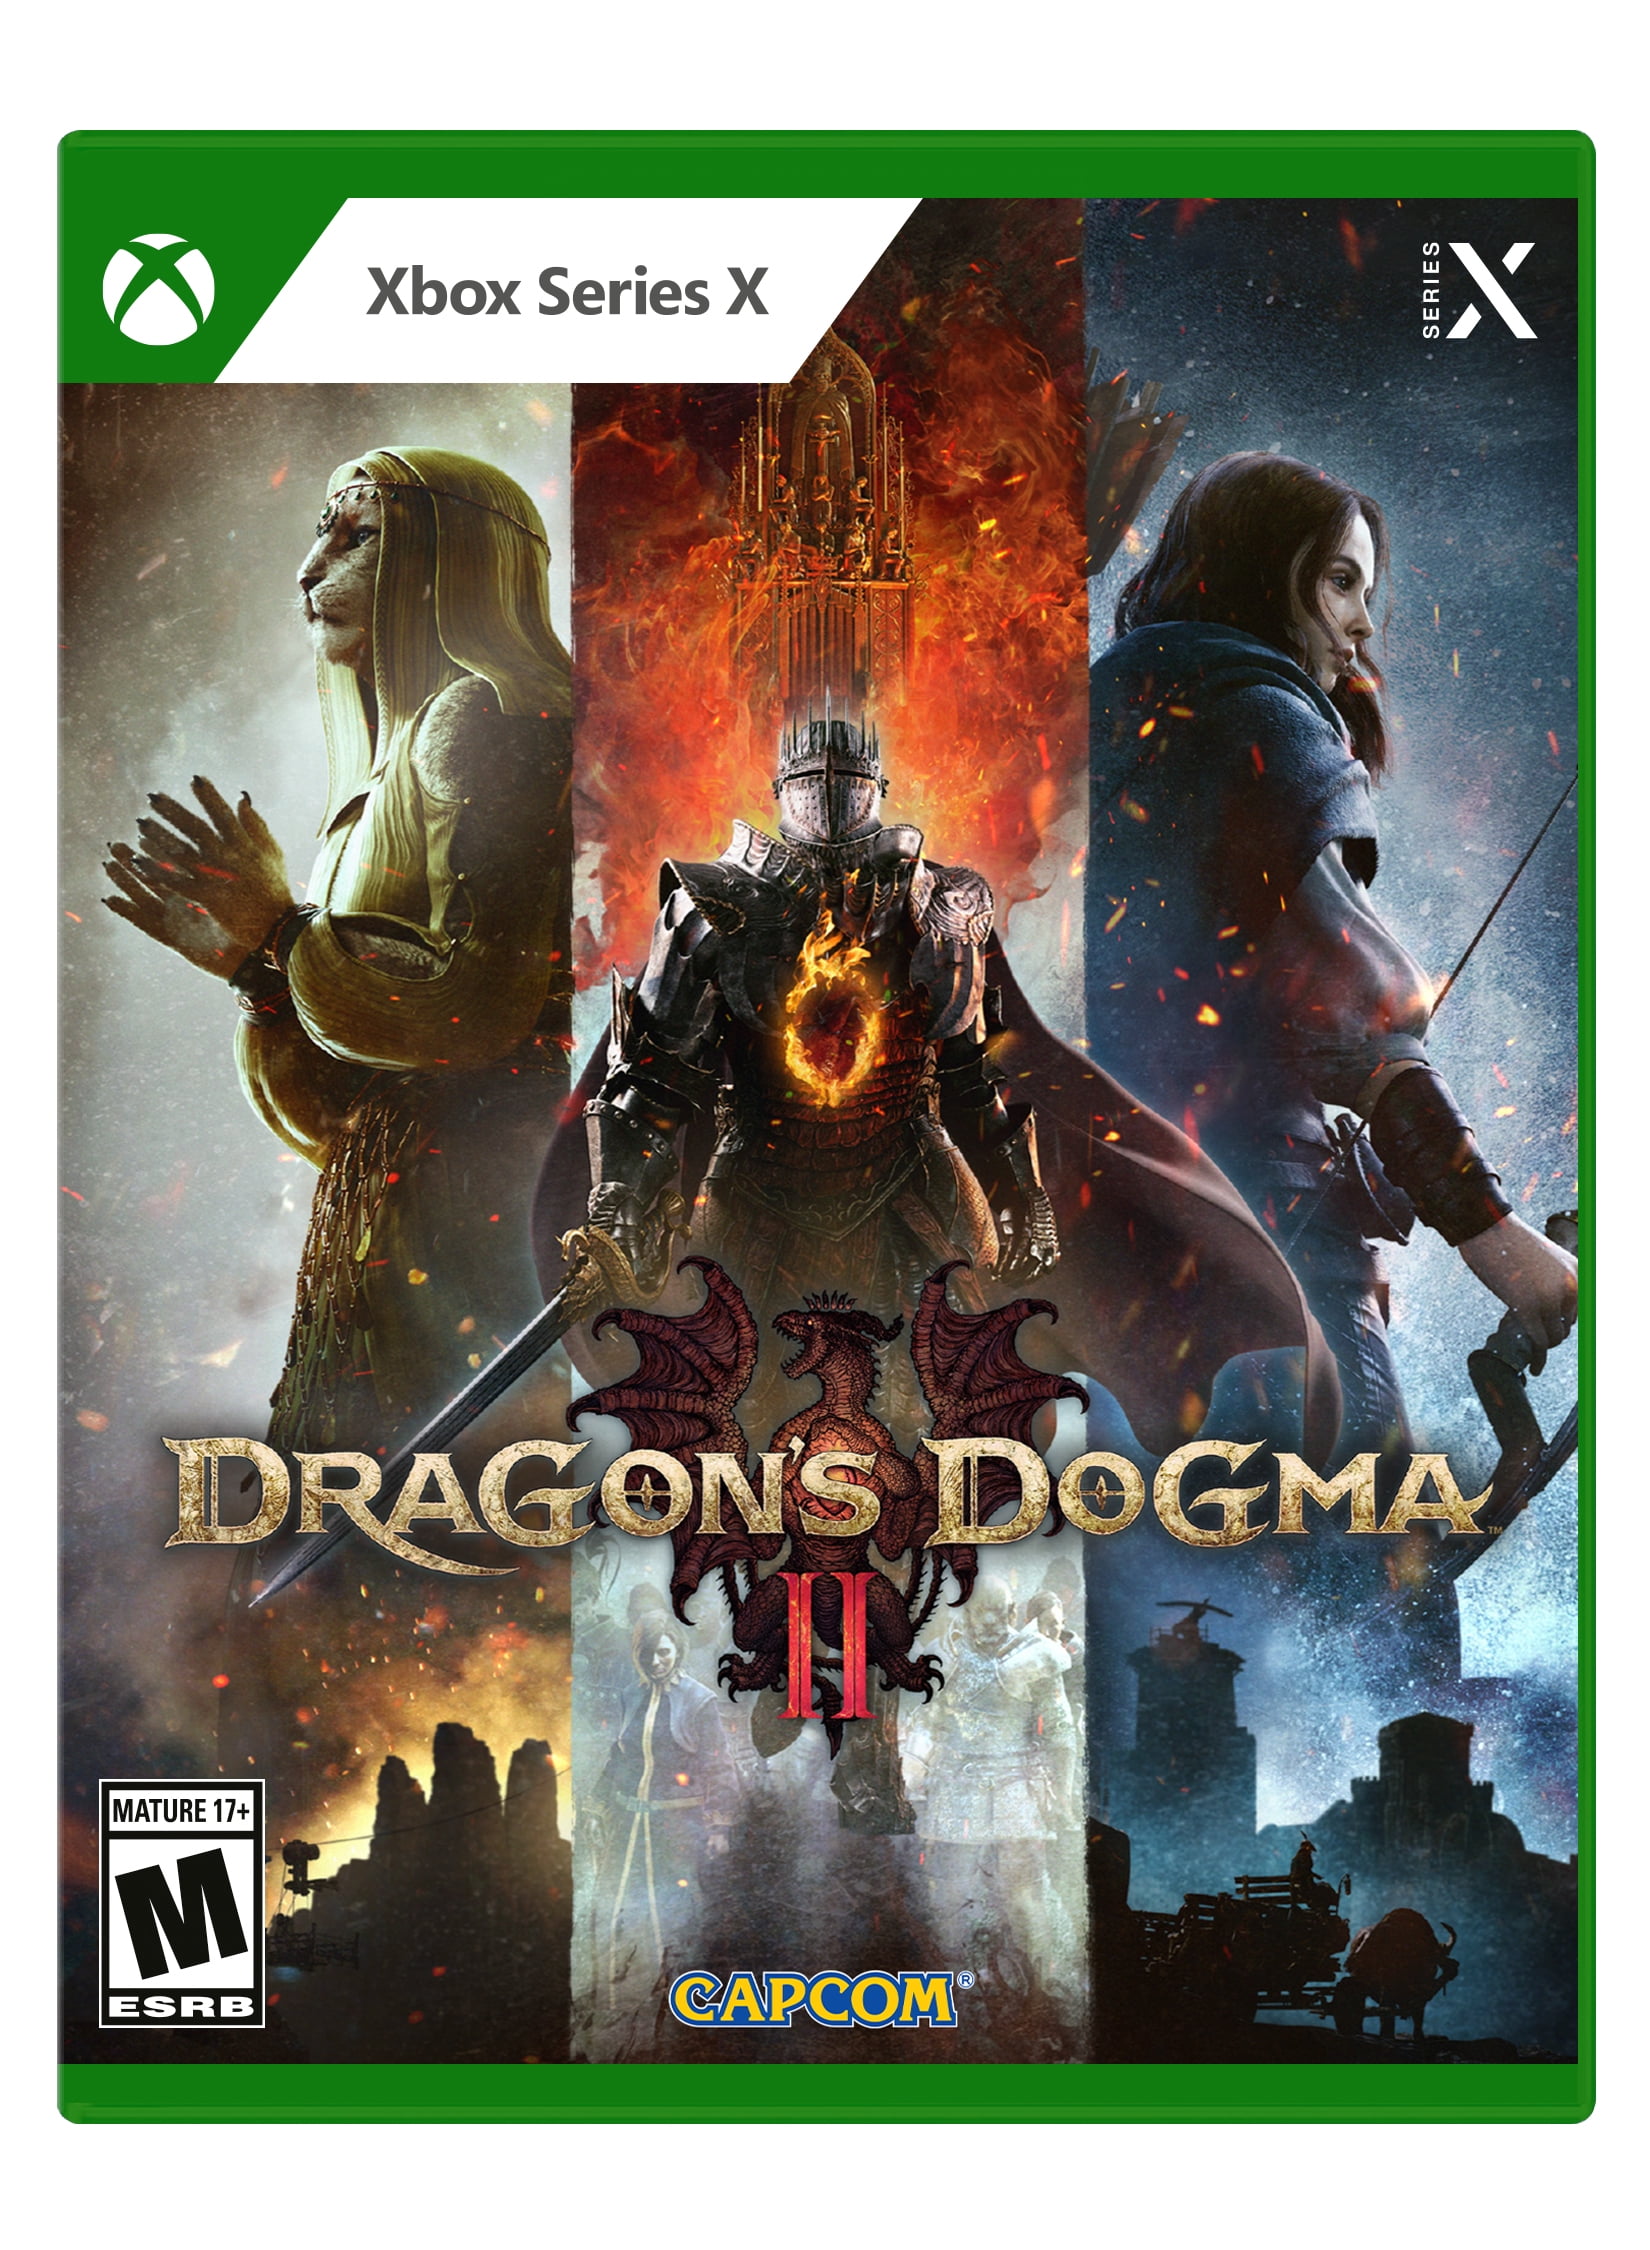 Los FPS de Dragon's Dogma 2 serán 30 en PS5/Xbox Series X, S, según rumores